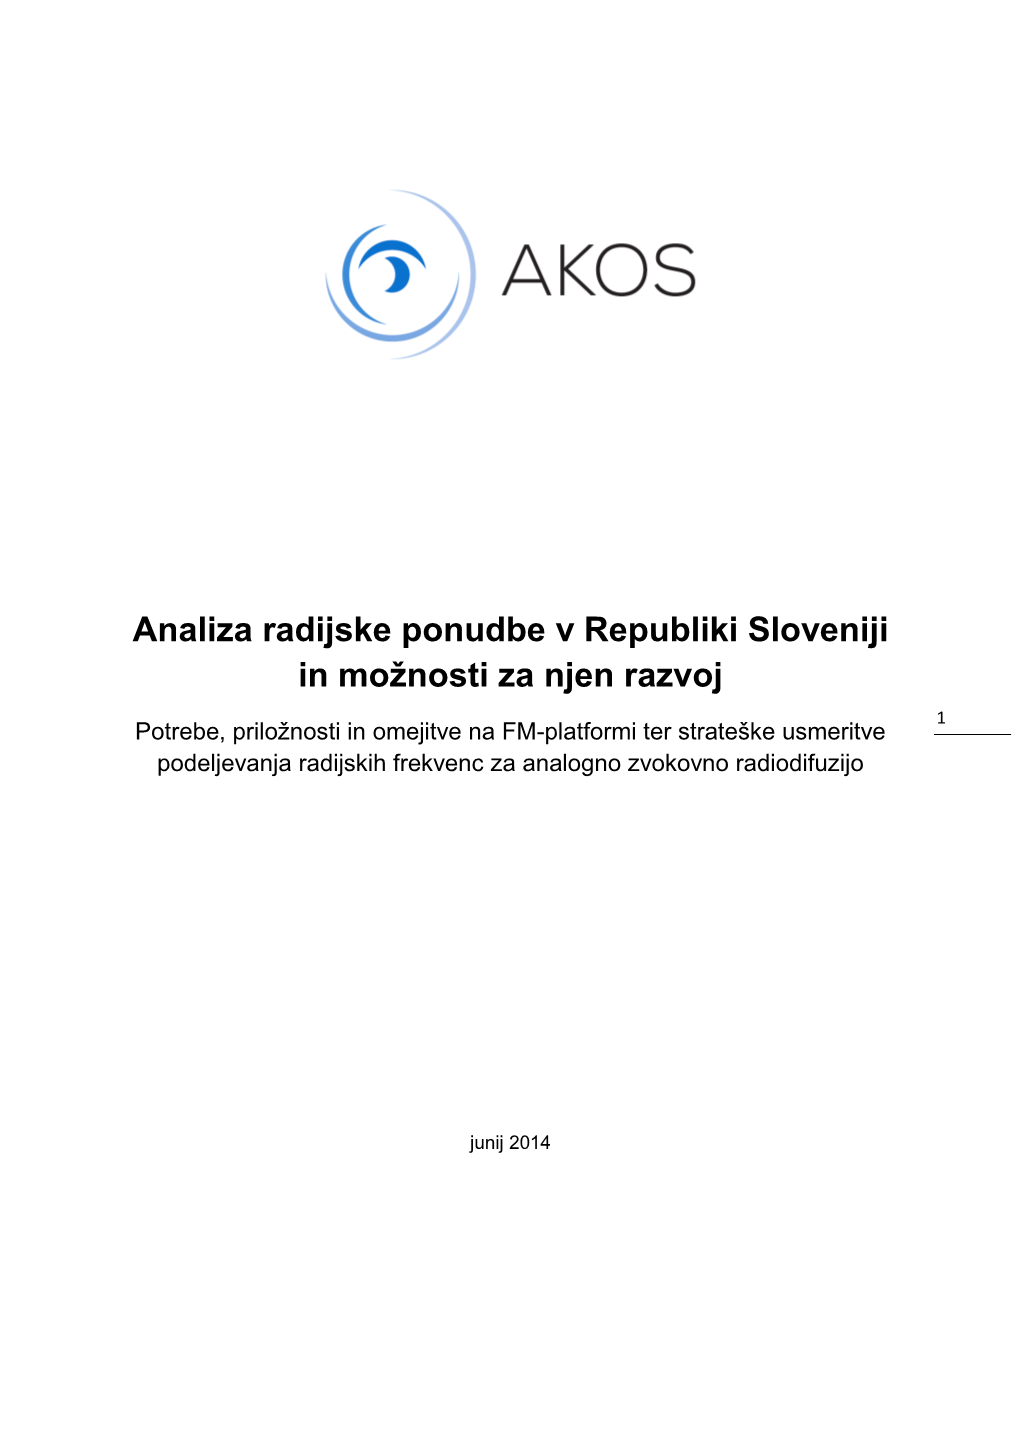 Analiza Radijske Ponudbe V Republiki Sloveniji in Možnosti Za Njen Razvoj